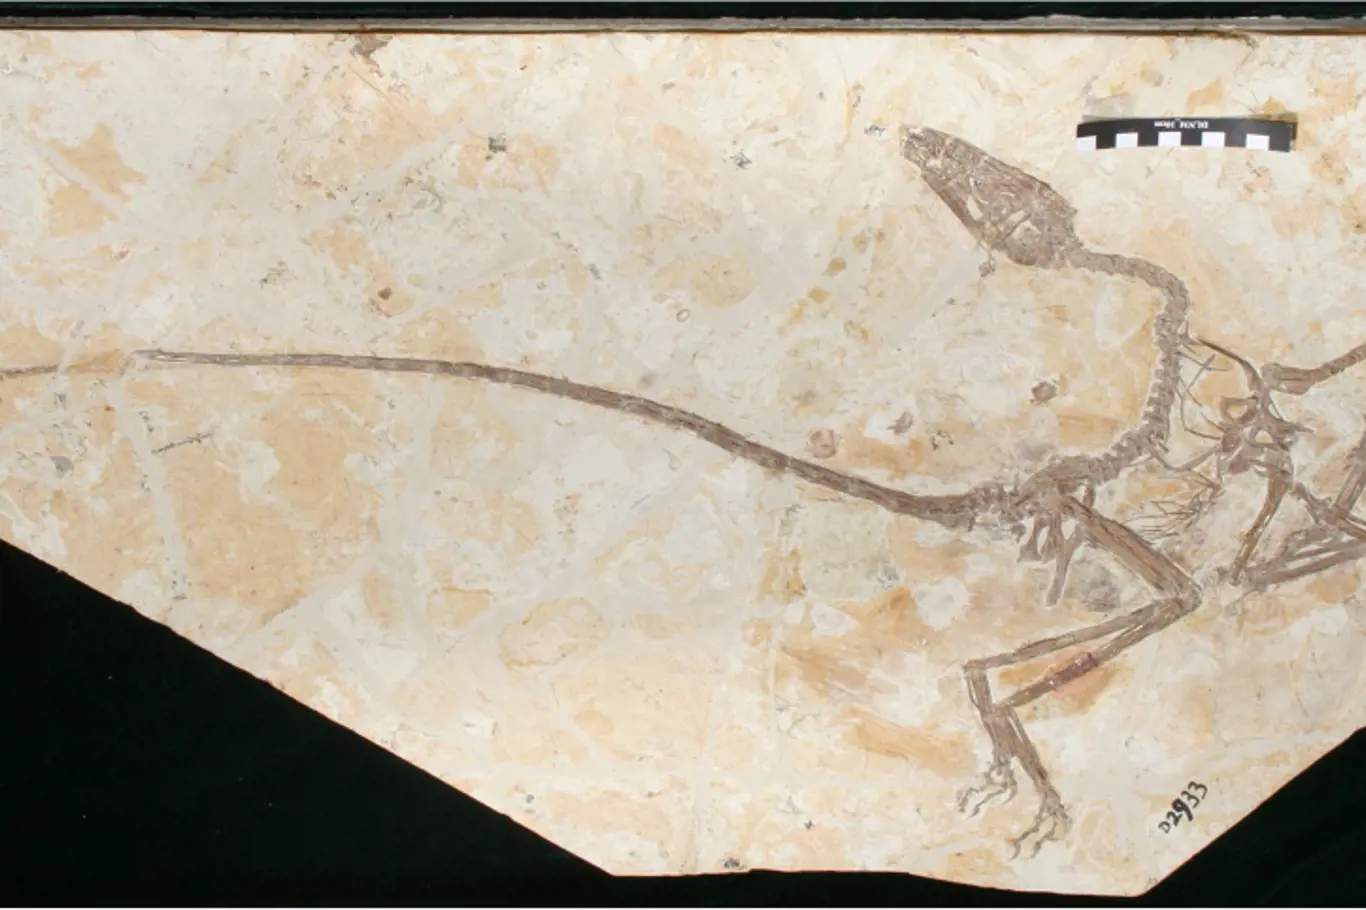 Fosilie obsahuje dvě ocasní pera v levé části snímku.